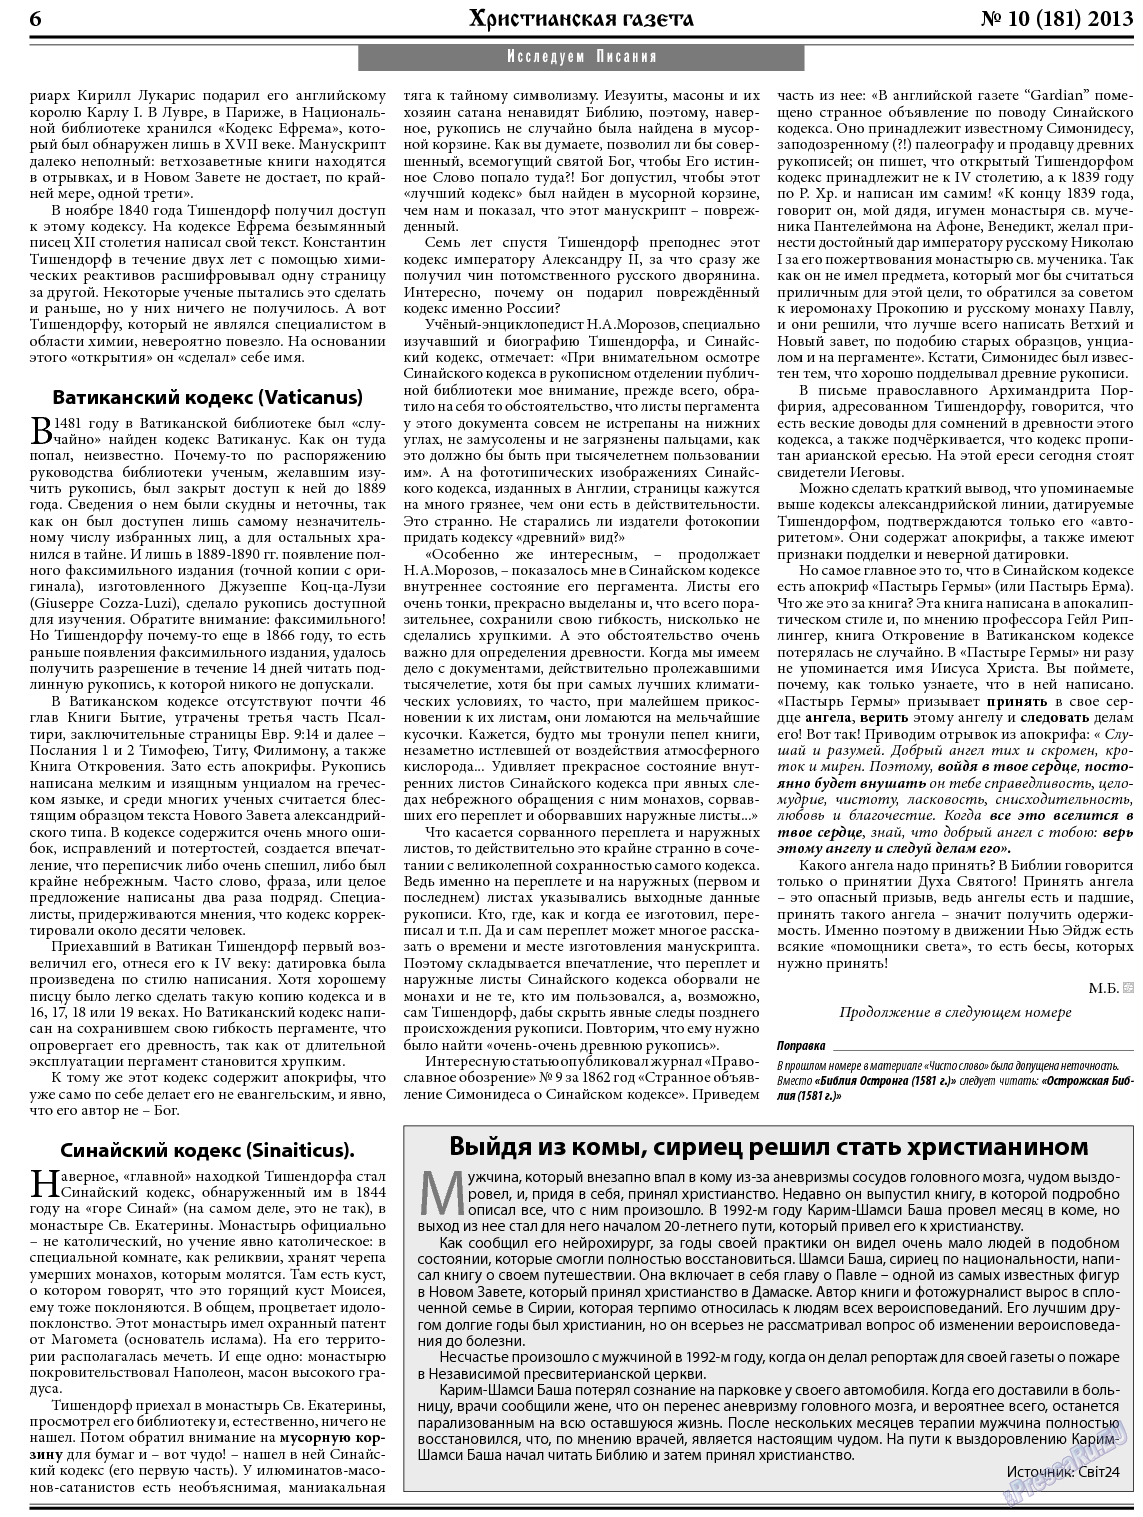 Христианская газета, газета. 2013 №10 стр.6